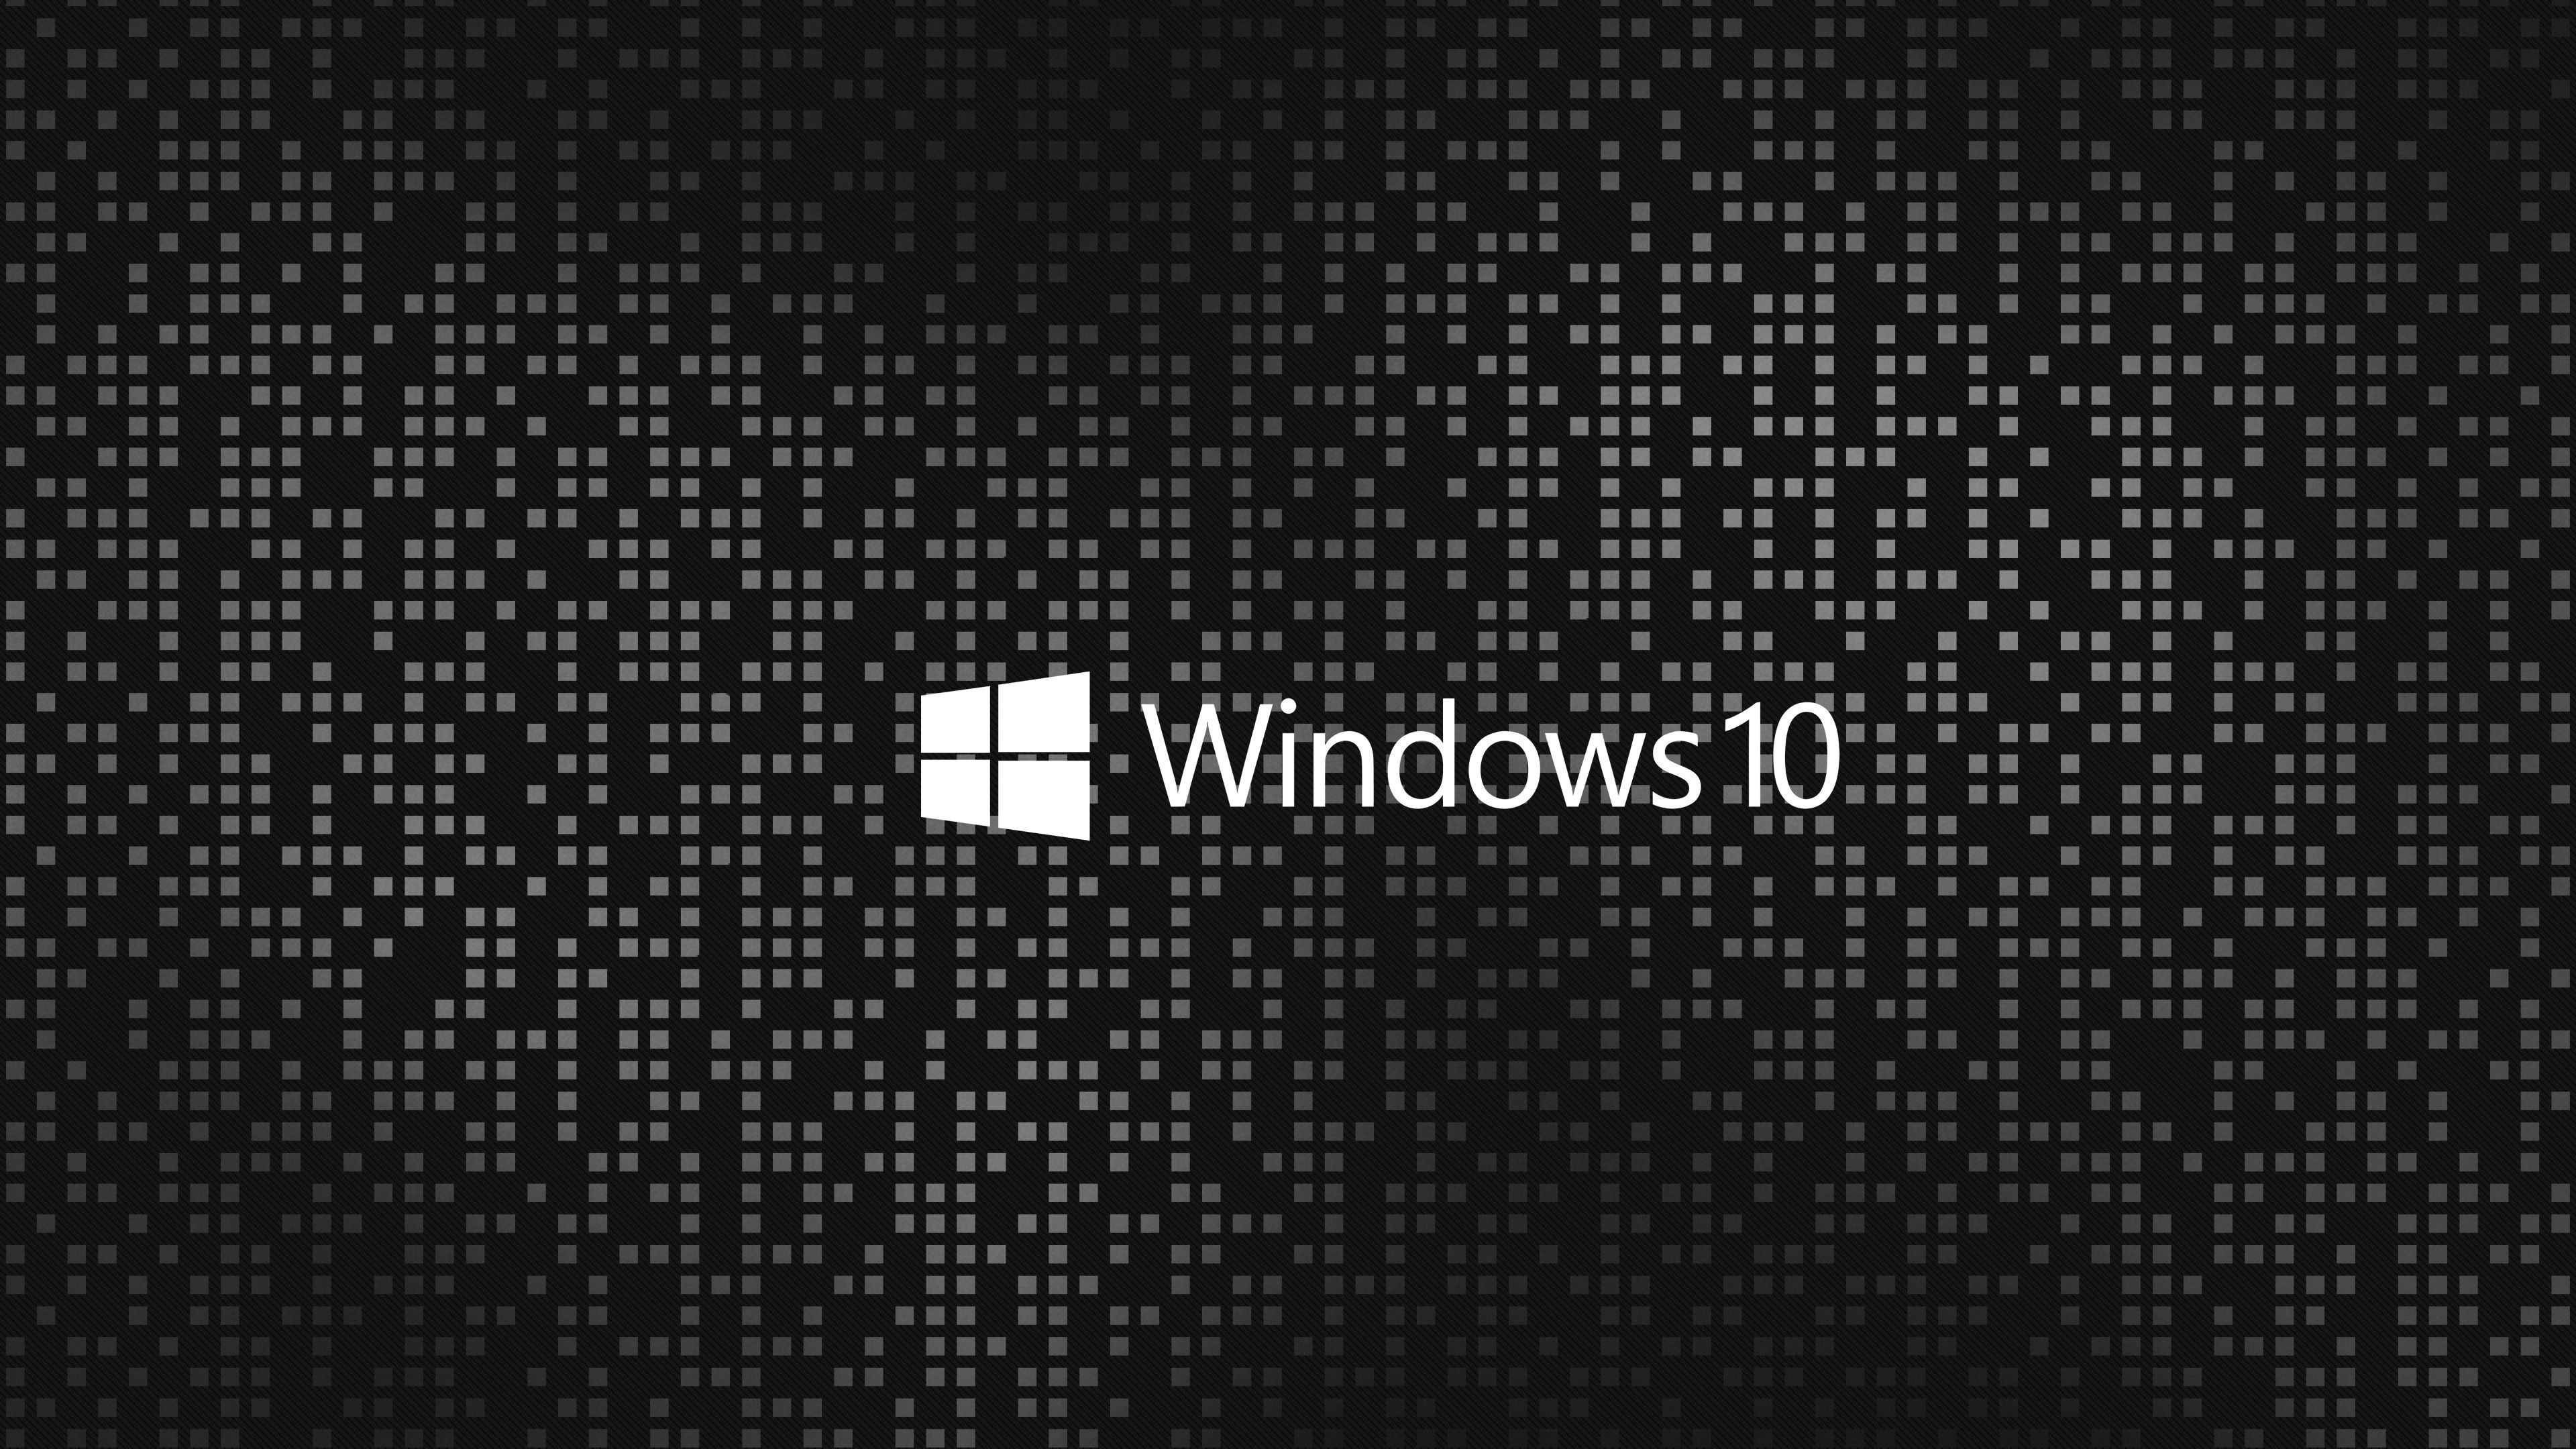 Nâng cao trải nghiệm của bạn trên Windows 10 với những hình nền đen 4k đẹp mắt. Hãy khám phá những hình nền tuyệt đẹp và độc đáo để thực sự làm nổi bật trang trí máy tính của mình. Sự chất lượng cao cùng với độ phân giải tuyệt vời sẽ khiến bạn cảm thấy thích thú và hào hứng.